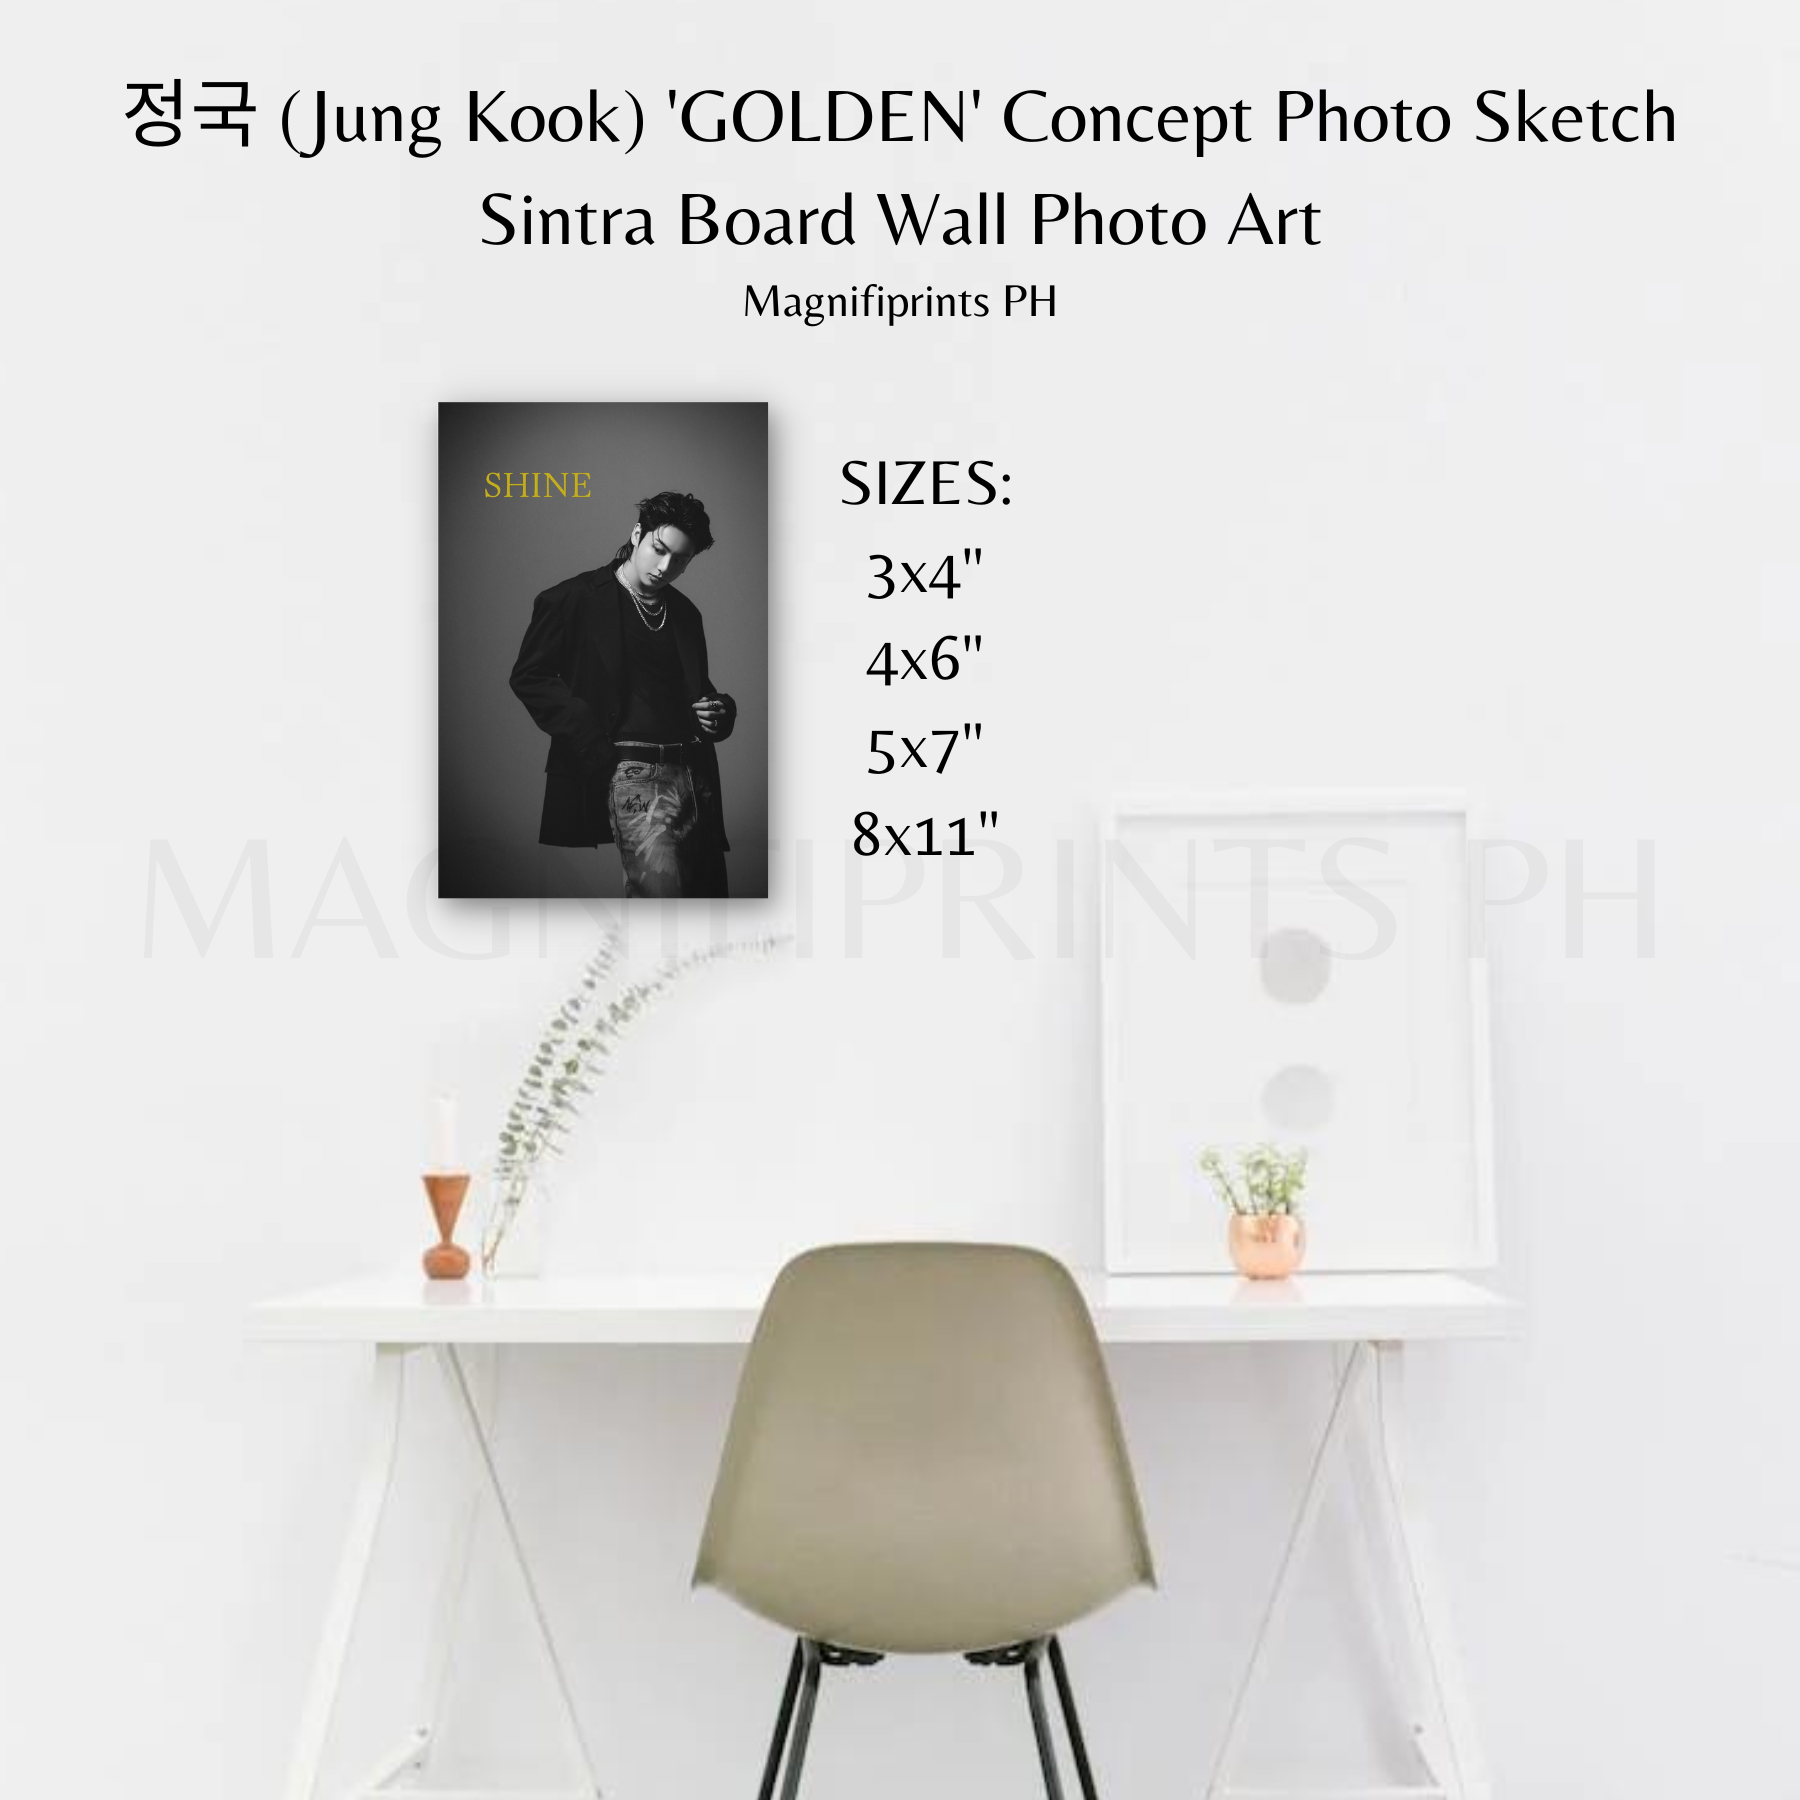 정국 (Jung Kook) 'GOLDEN' Concept Photo - SUBSTANCE